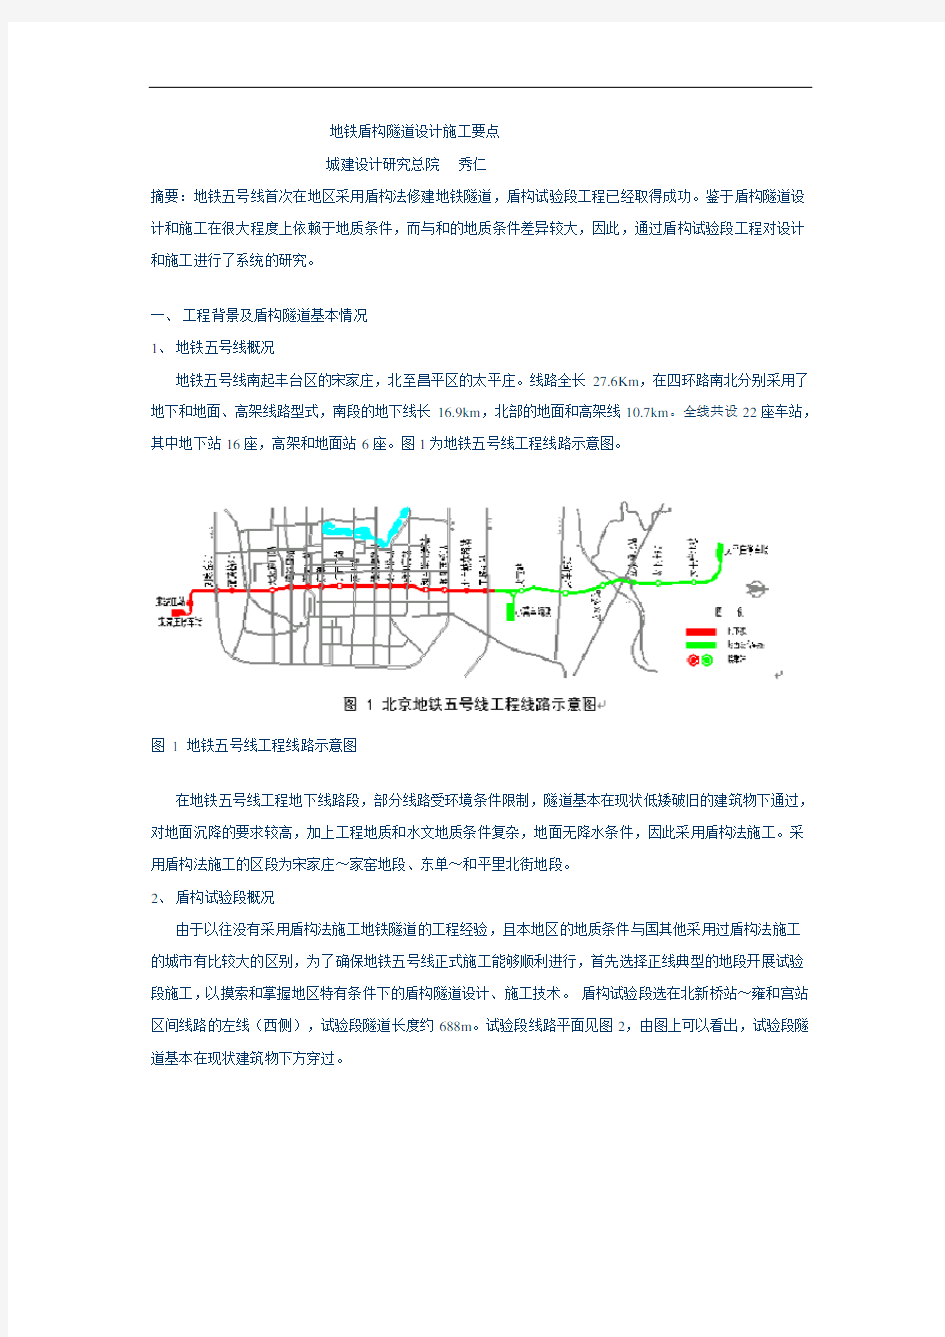 北京地铁盾构隧道设计施工要点